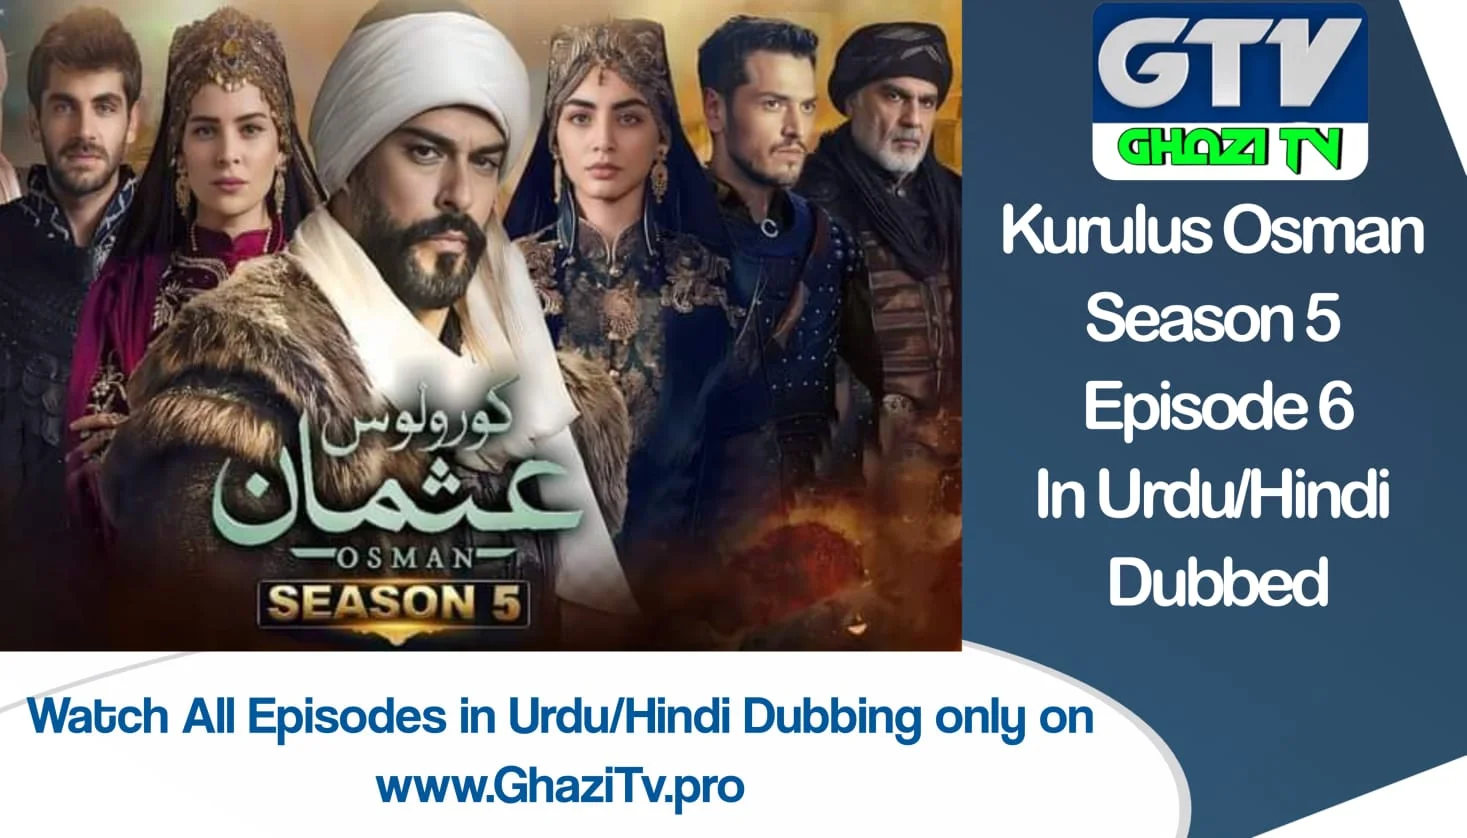 Kurulus Osman Season 5 Episode 6 in Urdu Dubbing